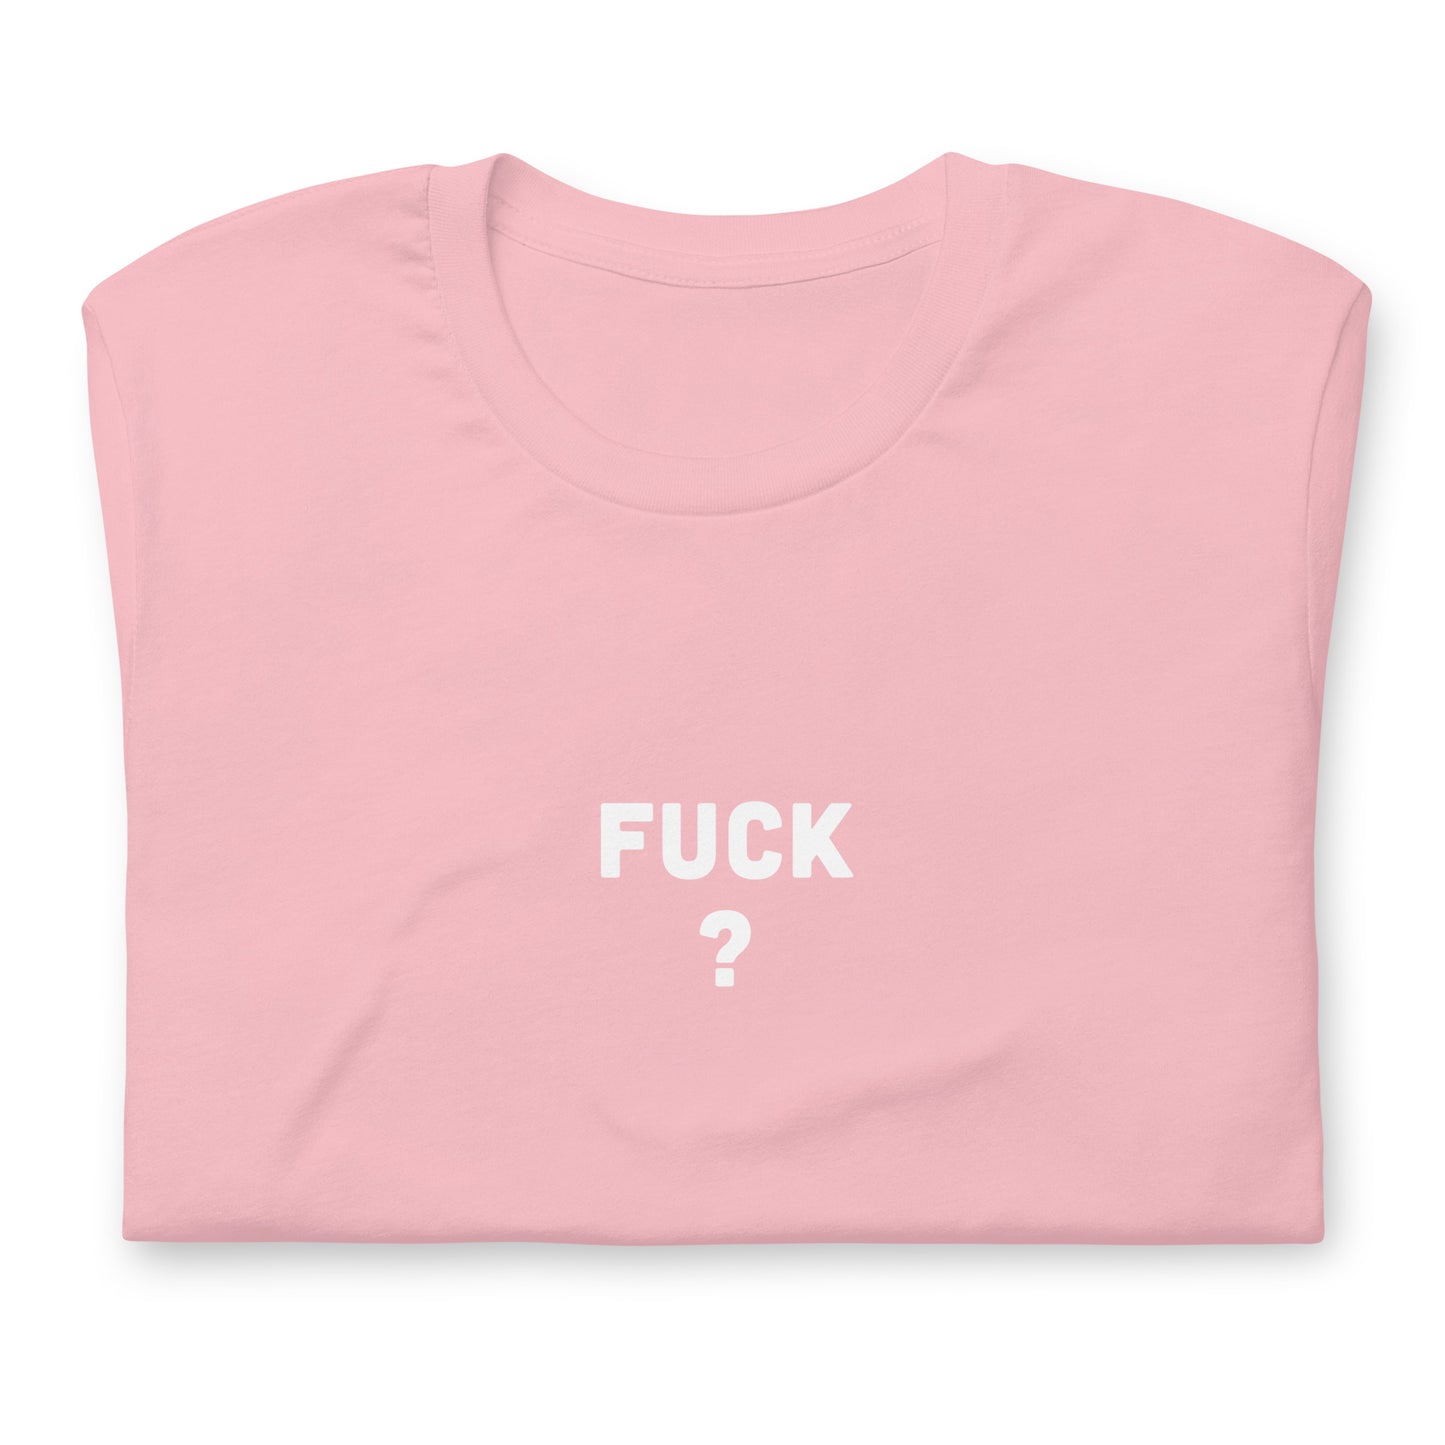 Fuck T-Shirt Size S Color Asphalt